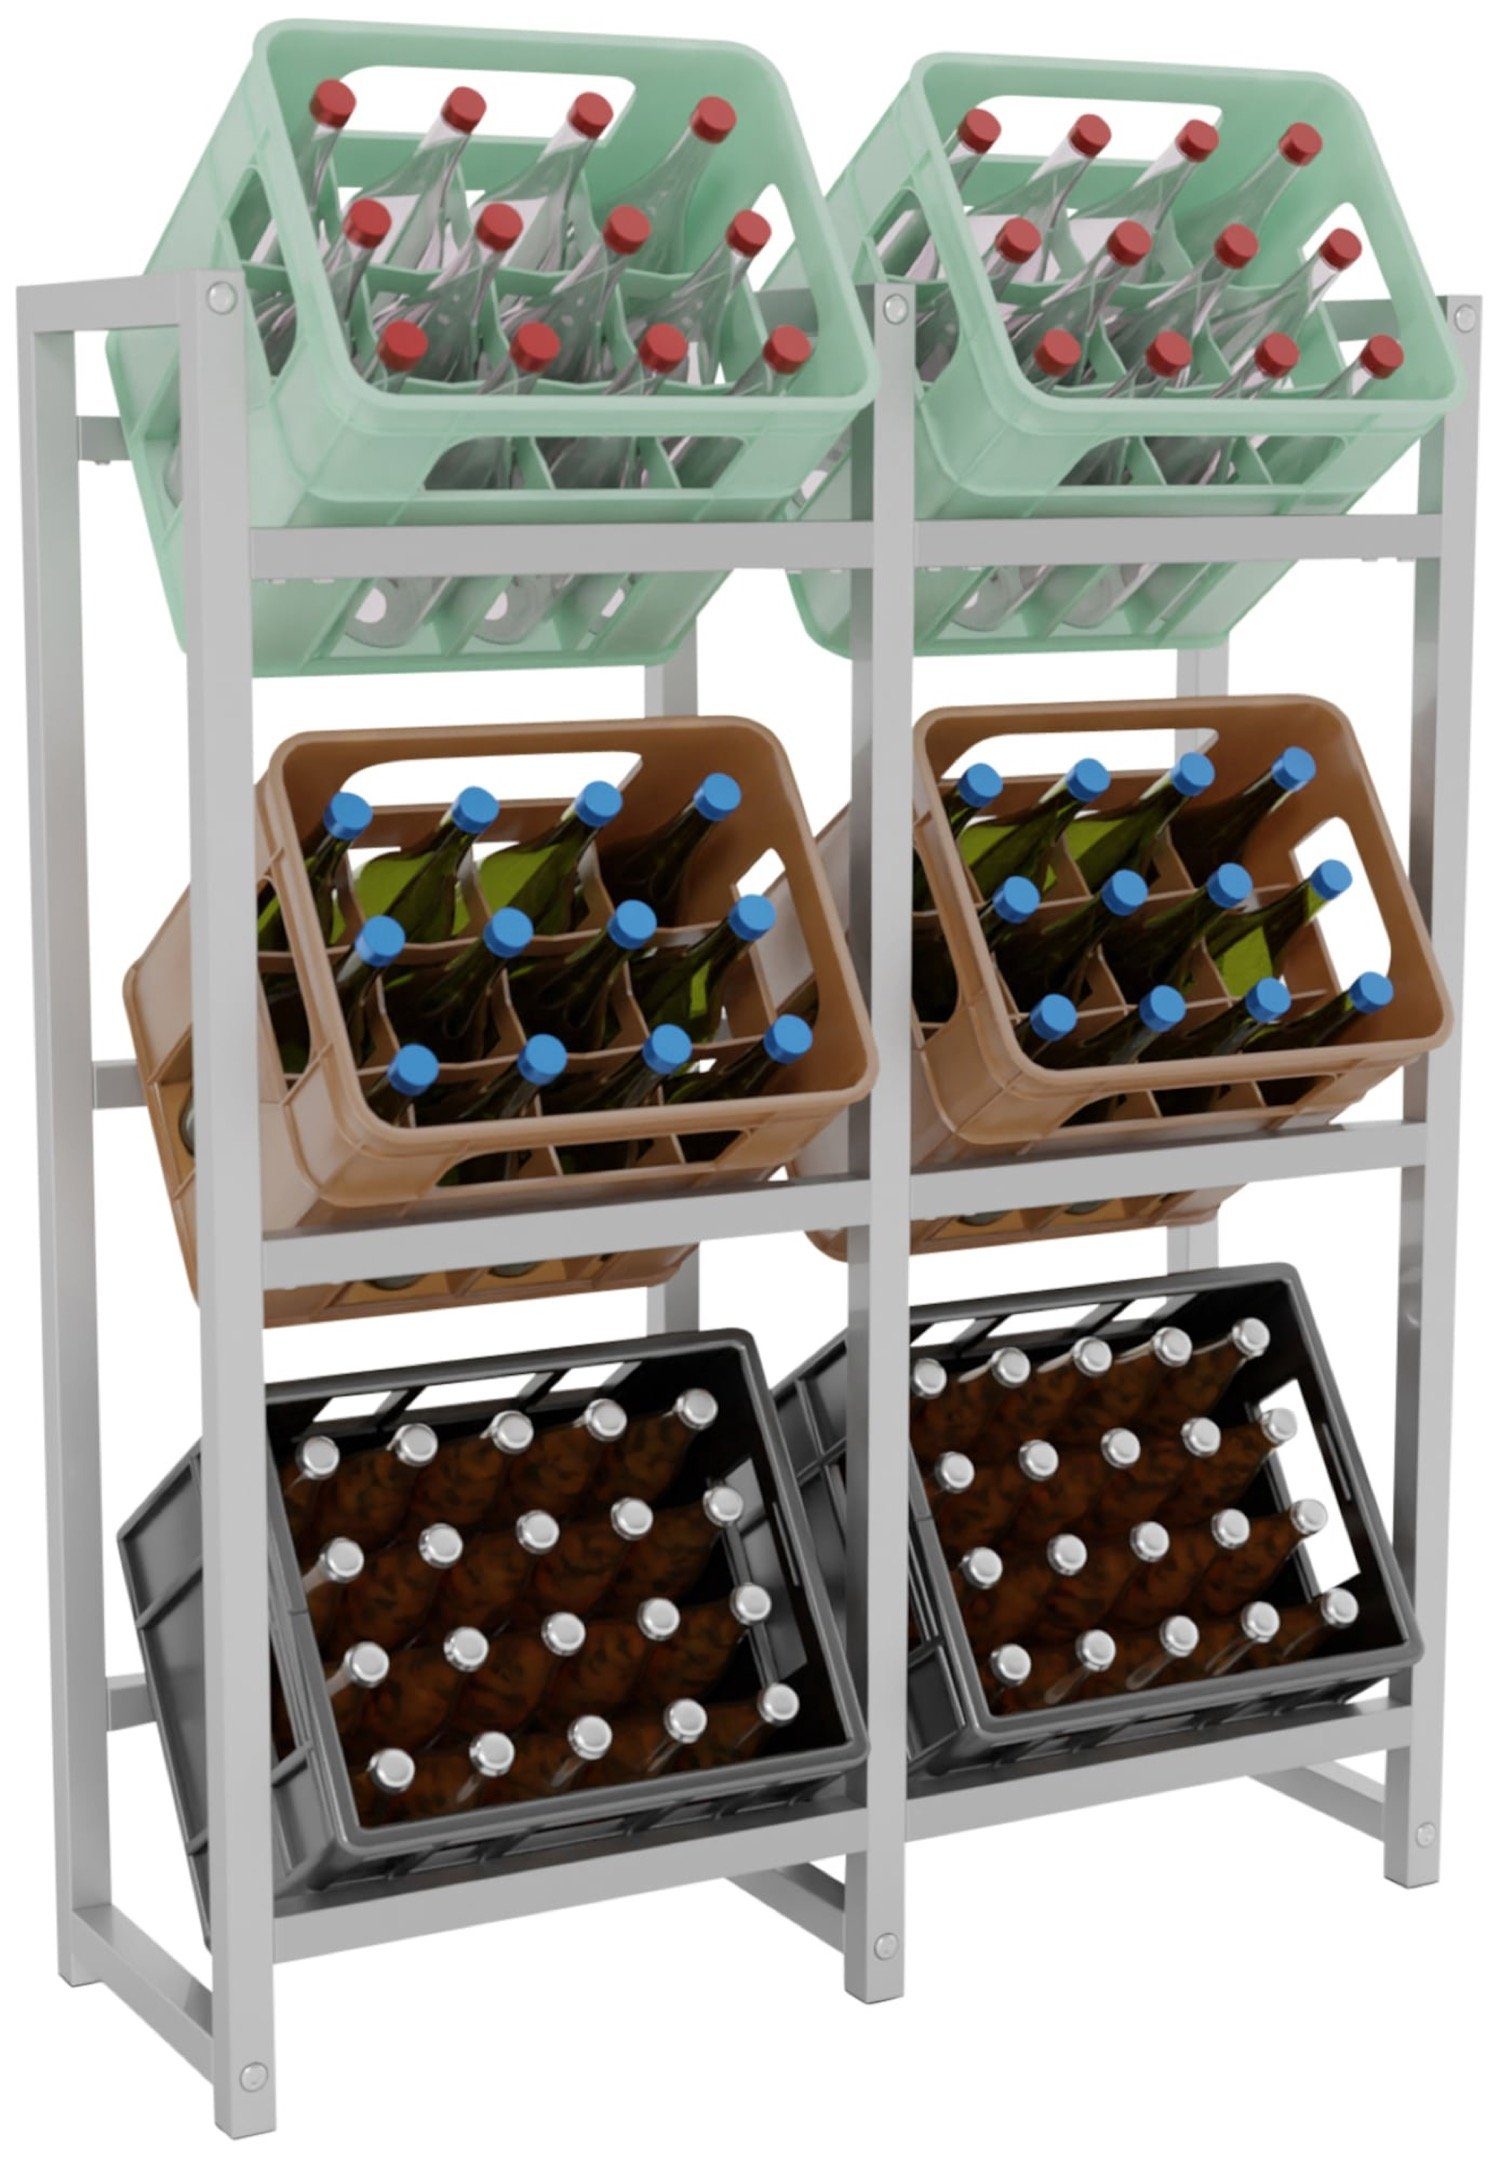 TPFLiving Standregal Getränkekistenständer Star - Getränkeregal für 6 Kisten in edelstahl, Kastenständer für Getränkekisten - Flaschenregal, Getränkekistenregal mit den Maßen (HxB xT): 116 x 91 x 31 cm | Standregale